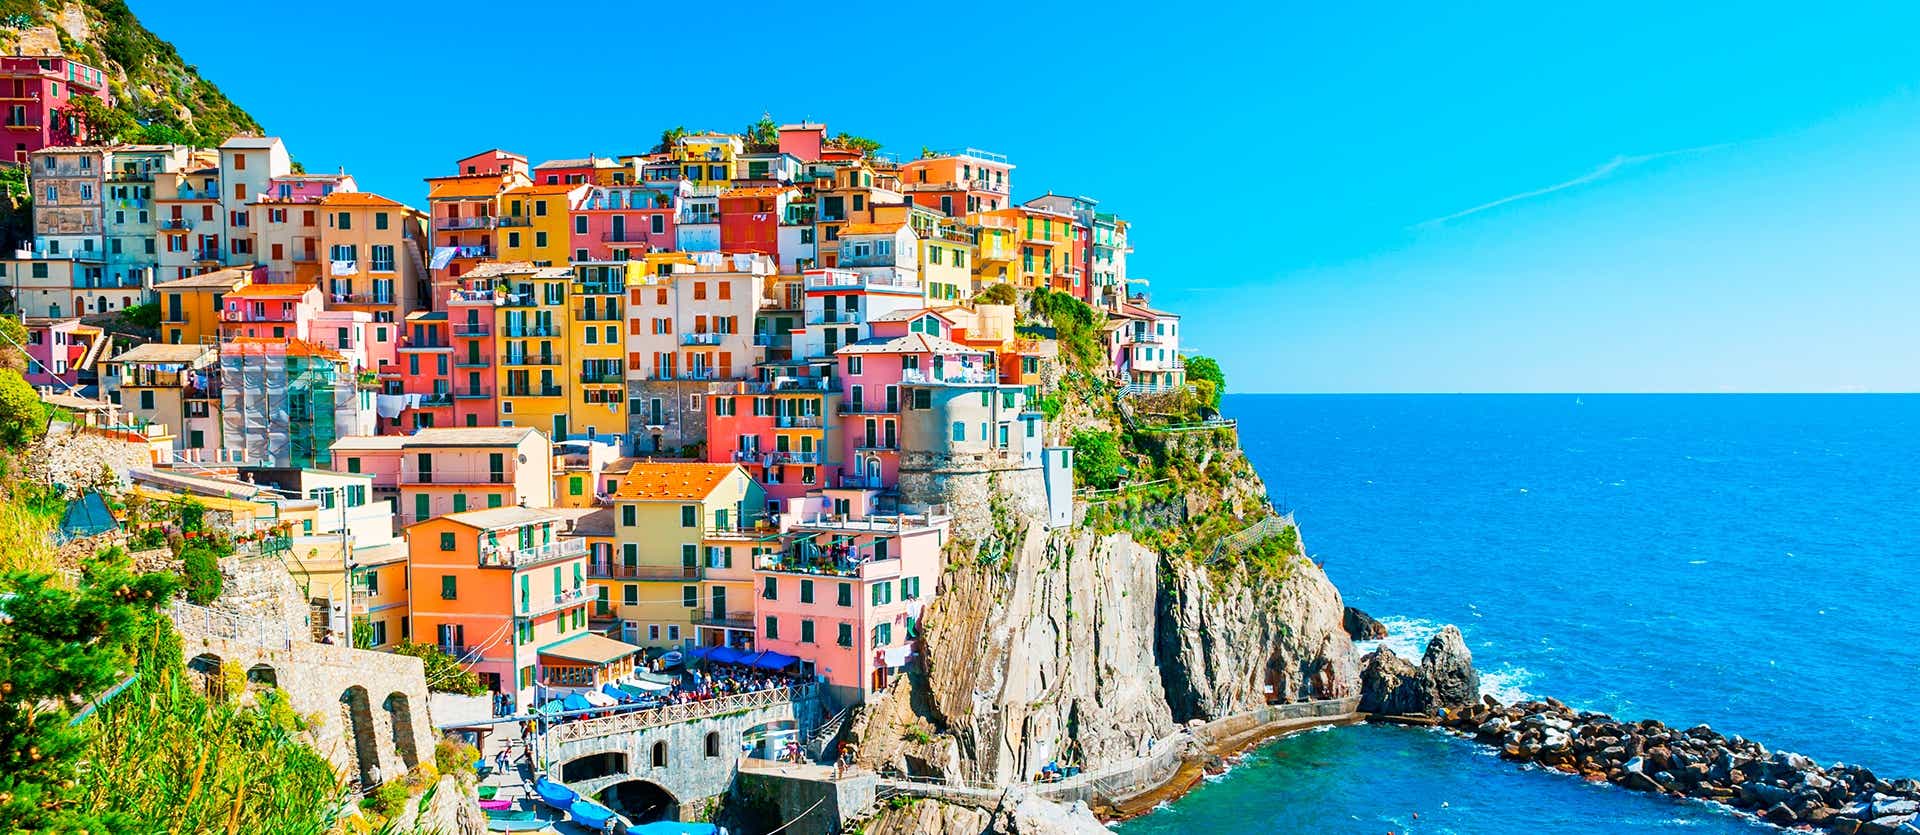 Cinque Terre <span class="iconos separador"></span> Italian Riviera